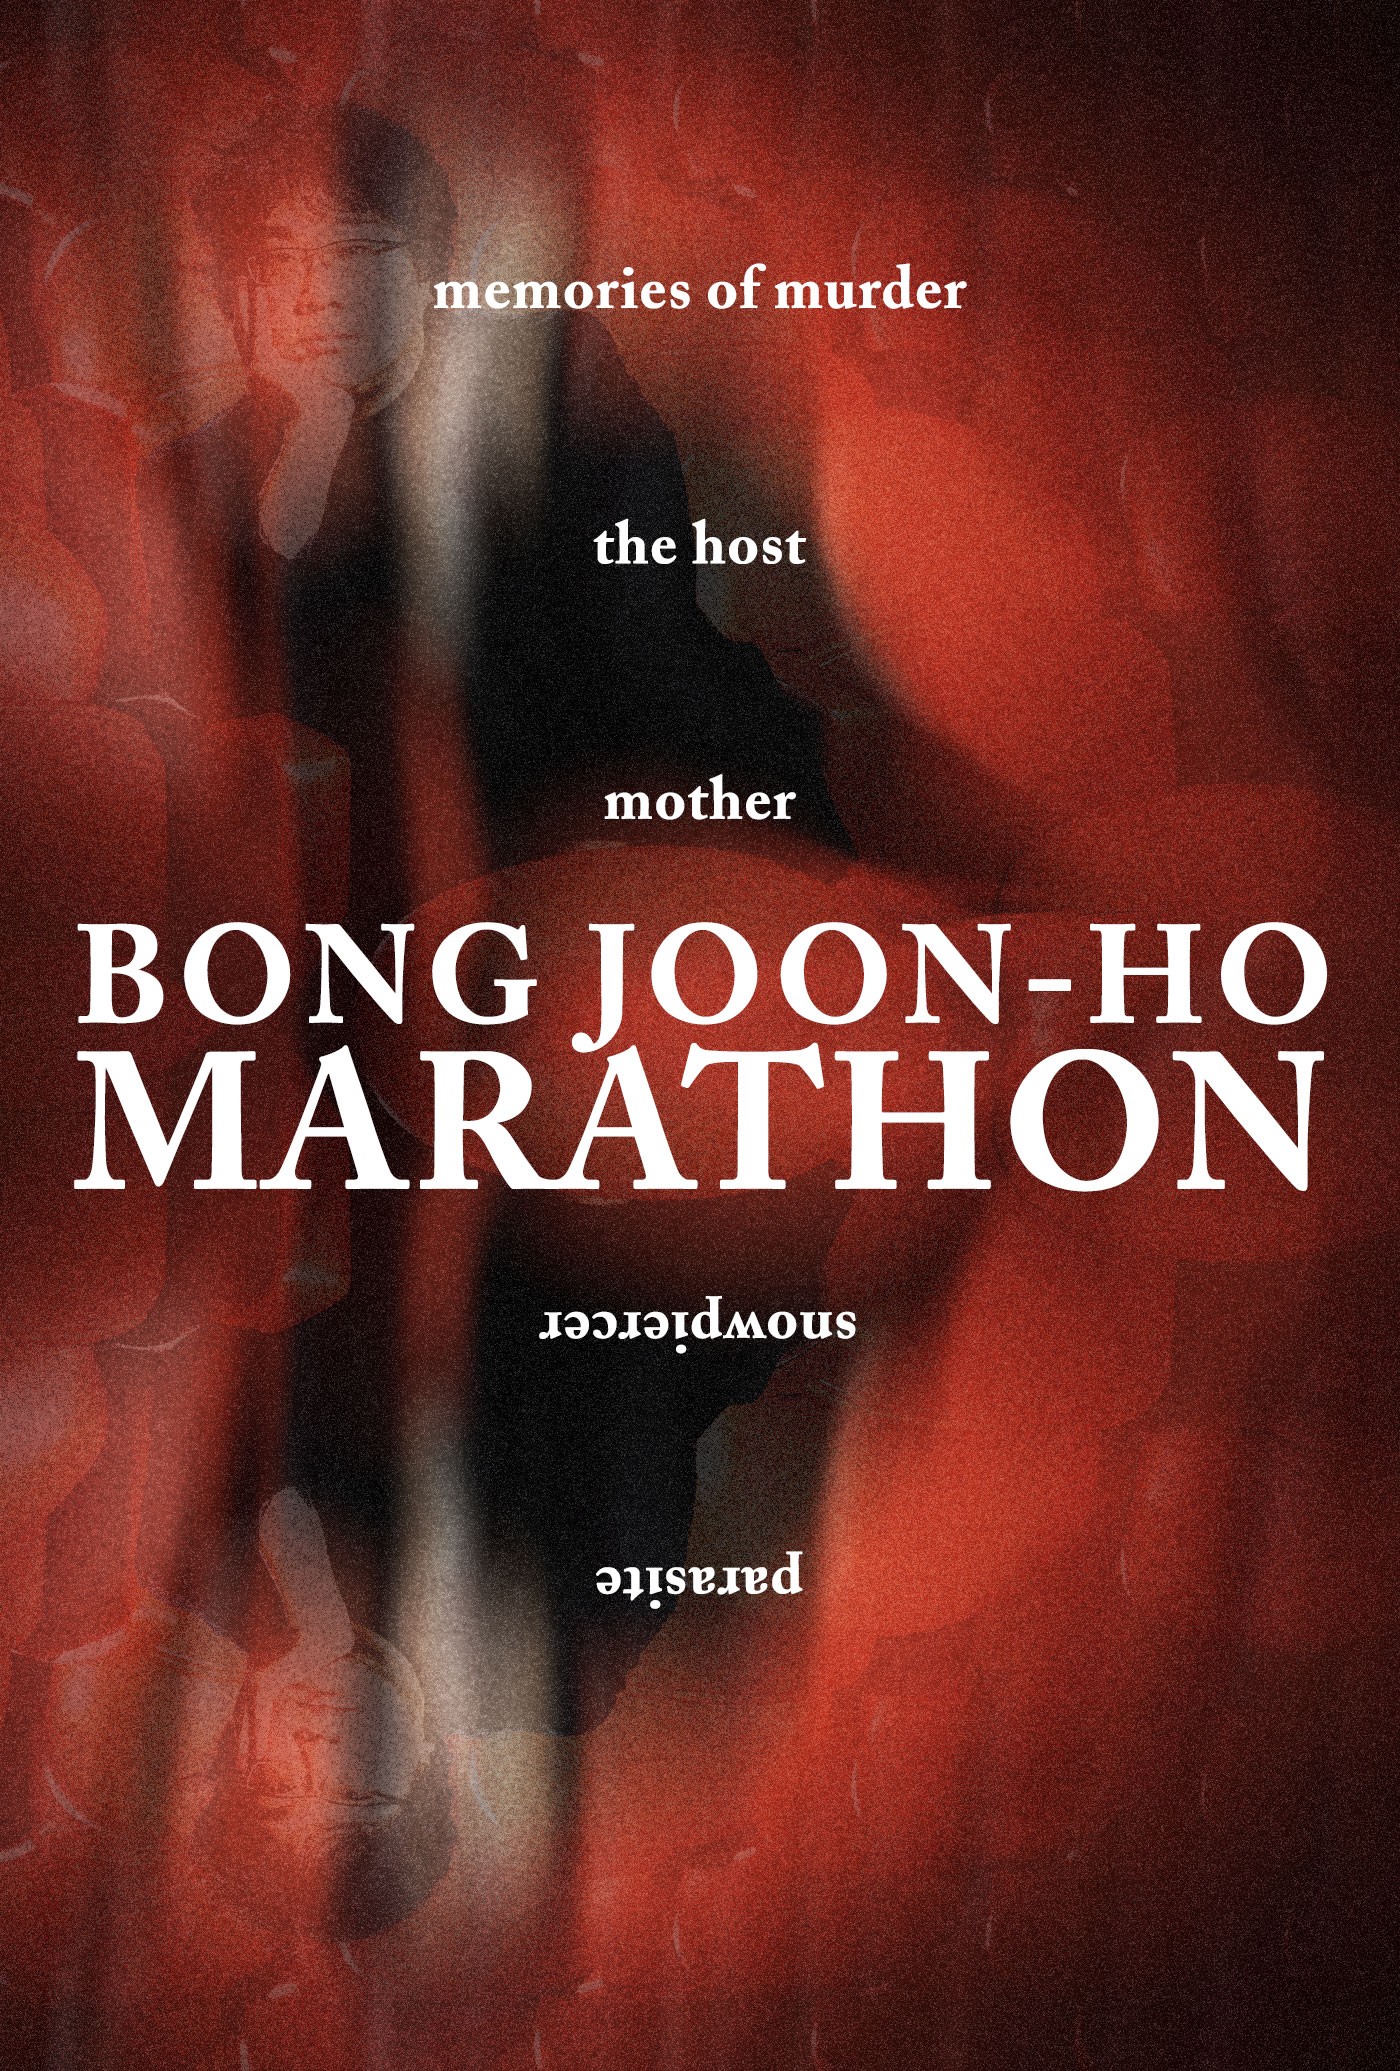 BONG JOON-HO MARATHON